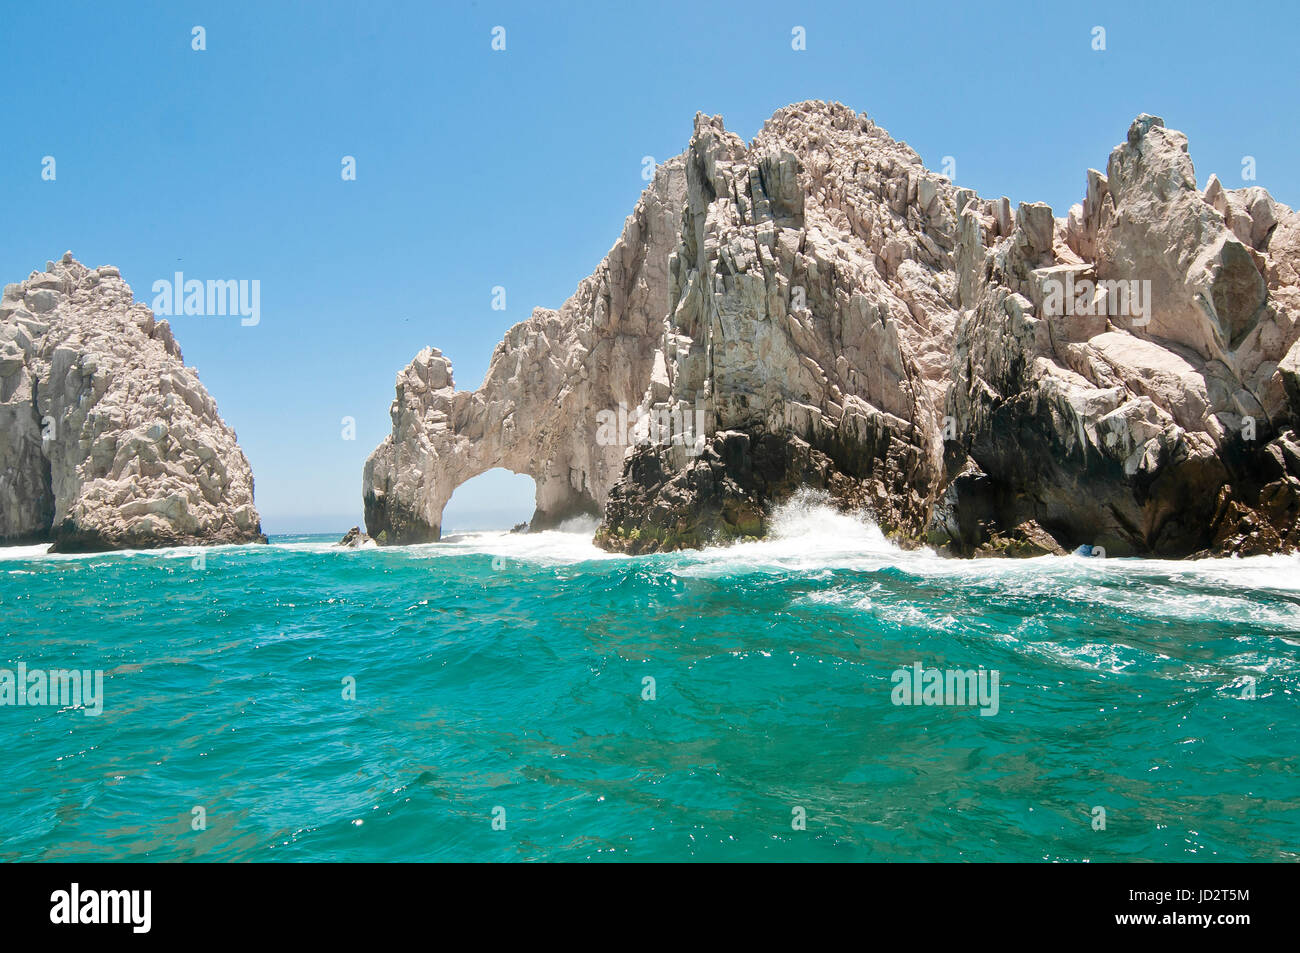 The Arc, In Cabo San Lucas Baja California Sur. MEXICO Stock Photo